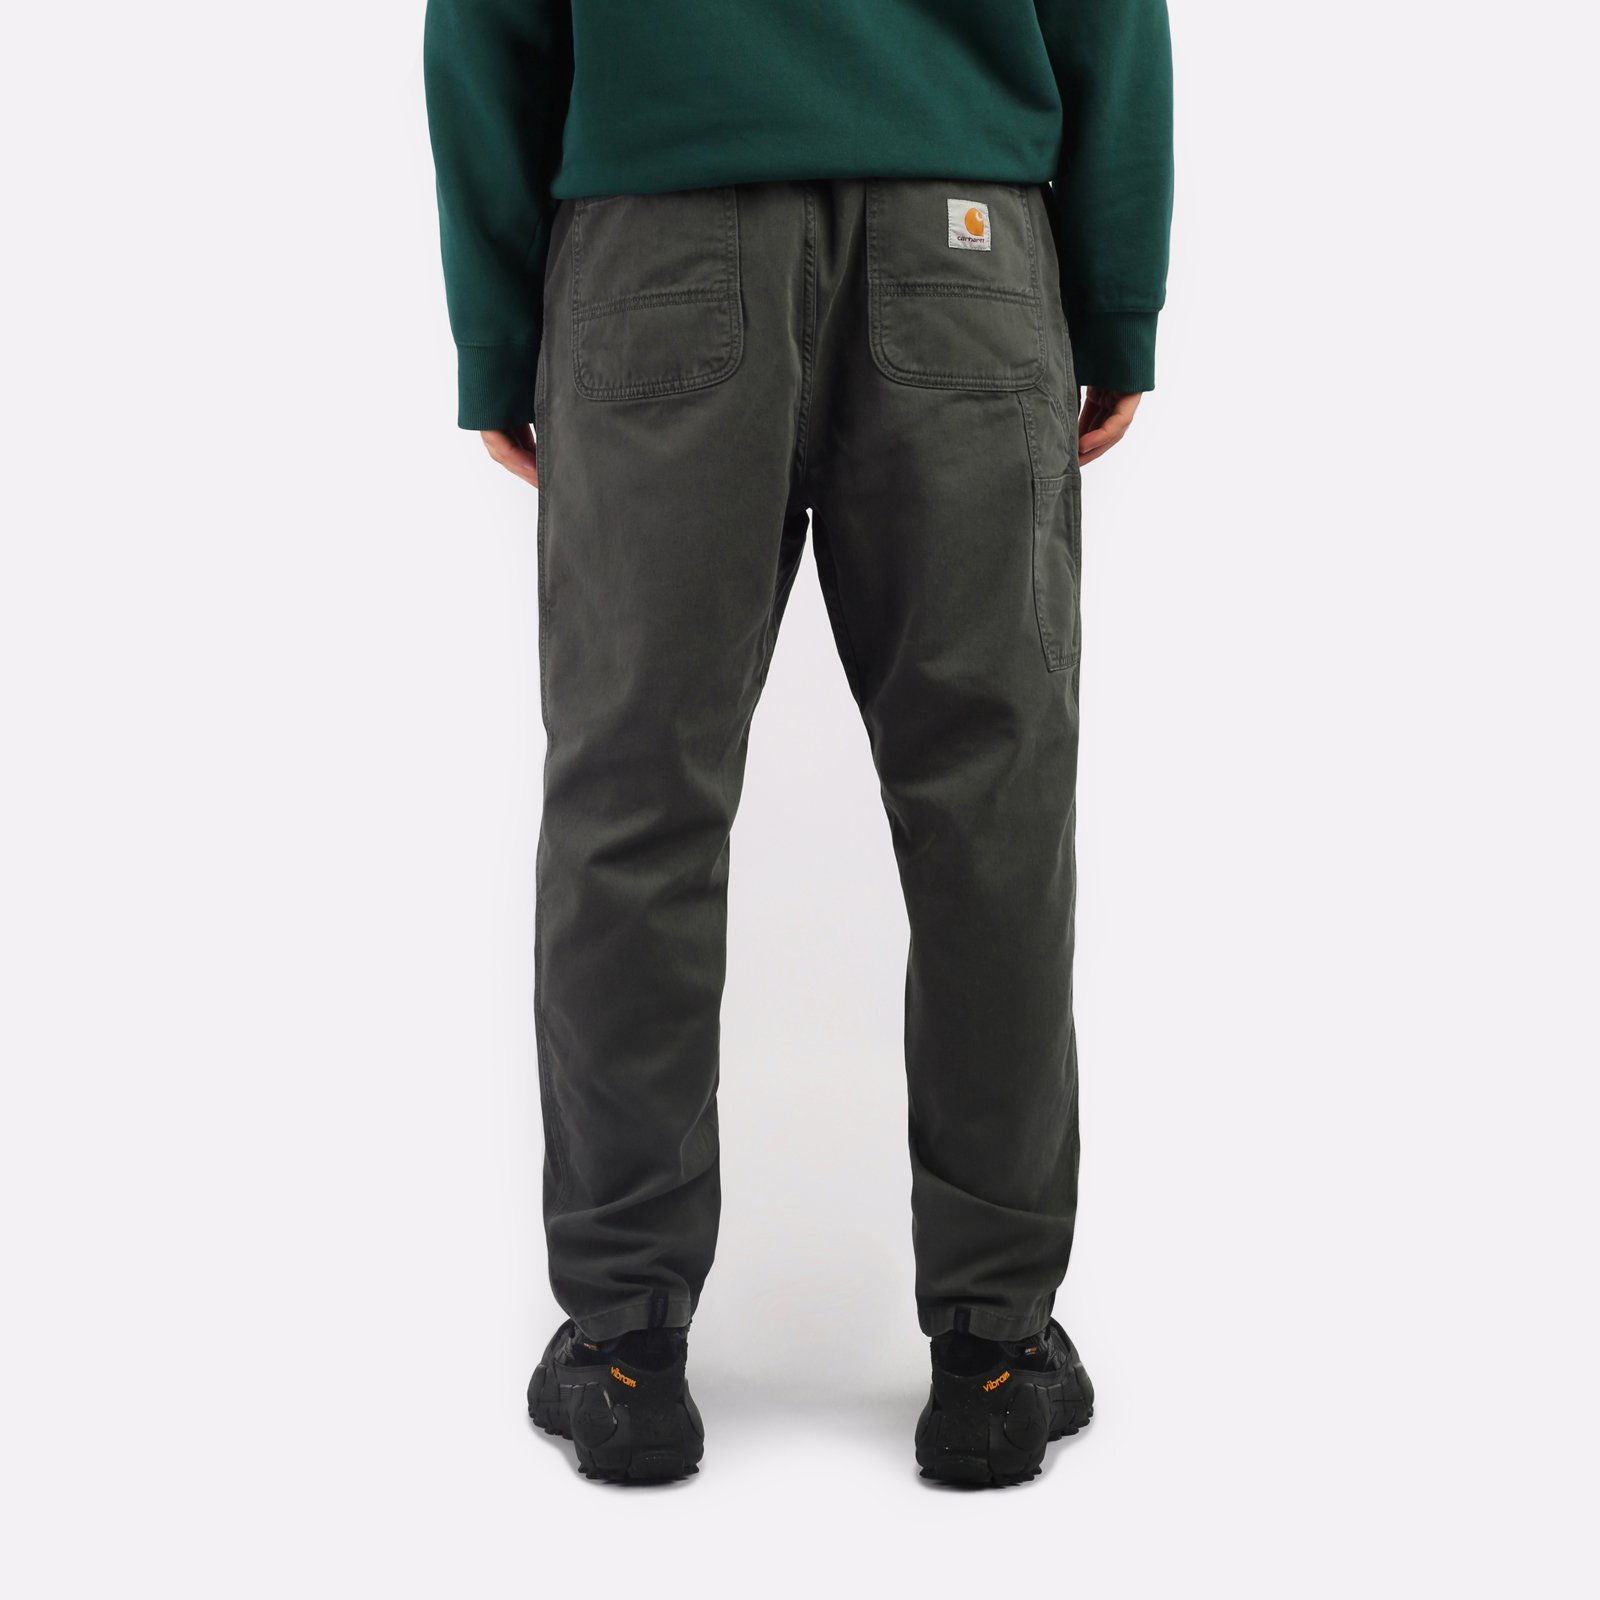 мужские брюки Carhartt WIP Flint Pant  (I029919-jura)  - цена, описание, фото 2